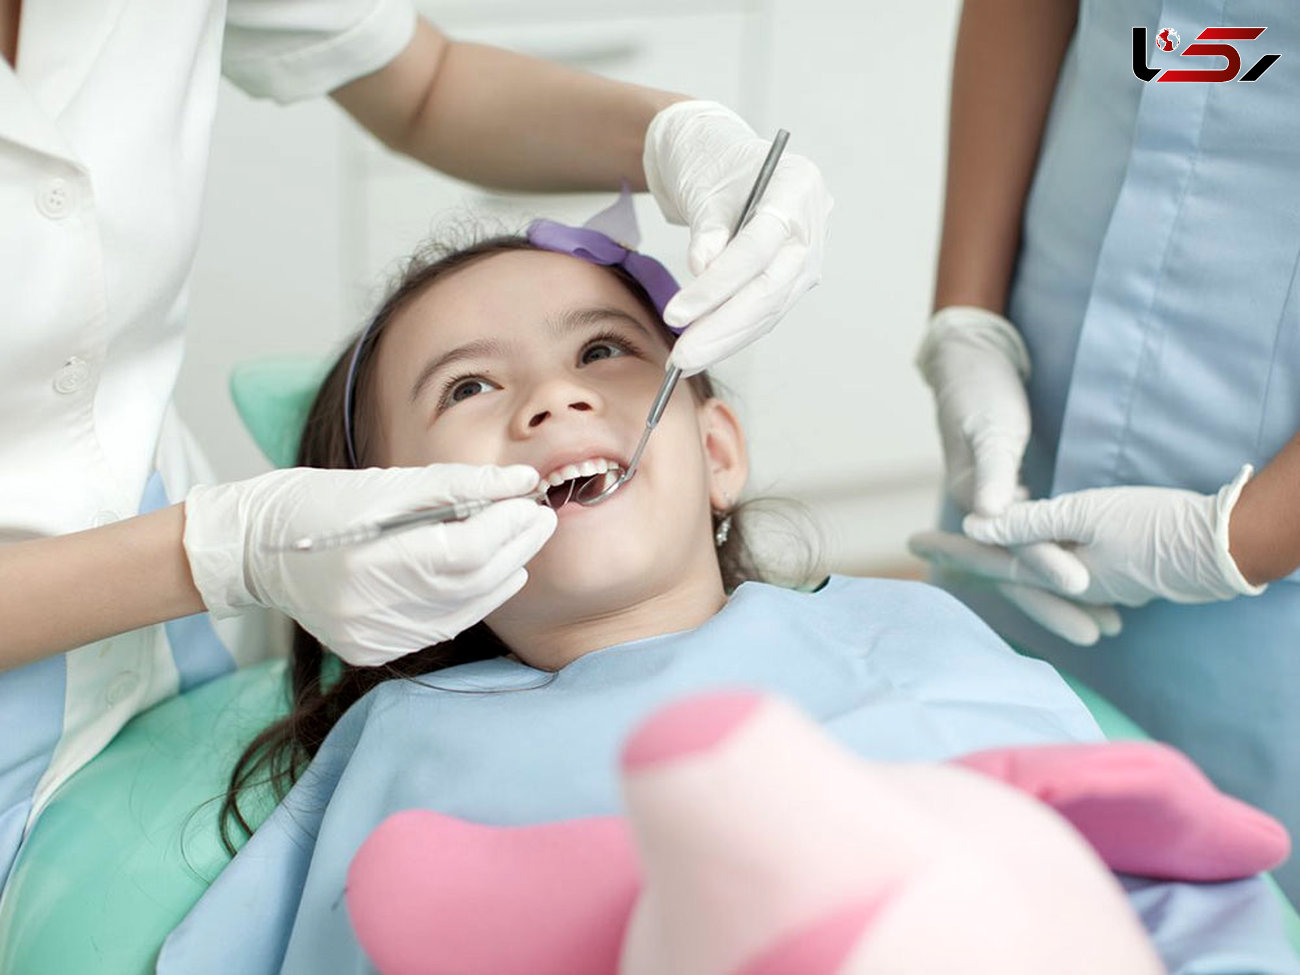  اجازه همسر برای دستیاری در رشته دندانپزشکی بخشنامه 10 سال گذشته / سازمان سنجش نقشی ندارد